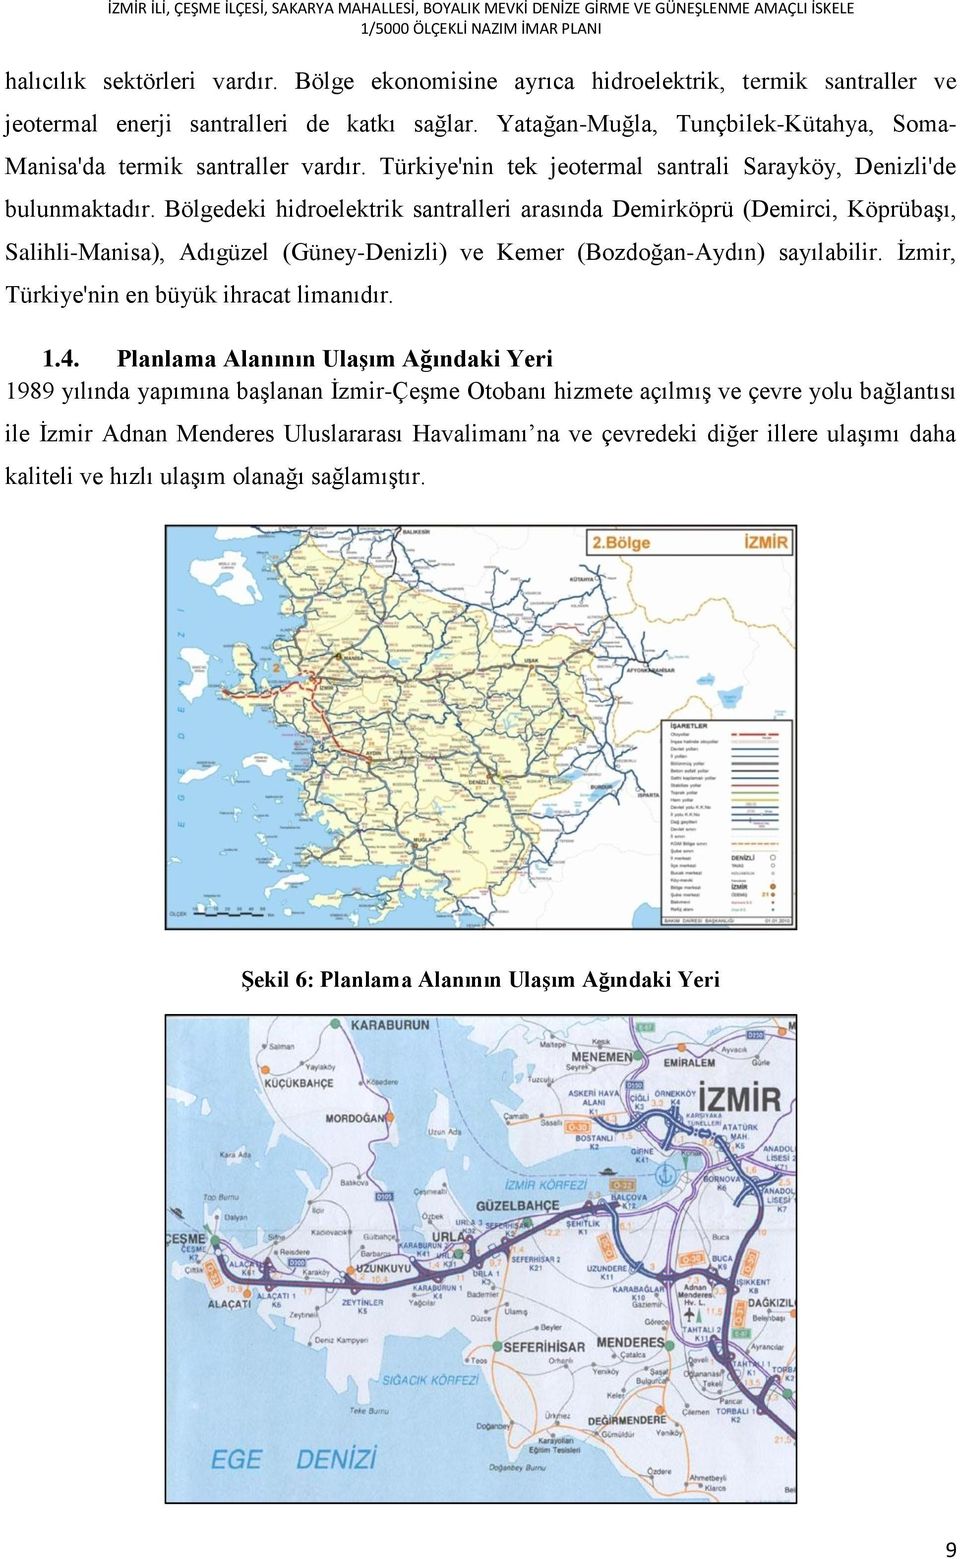 Bölgedeki hidroelektrik santralleri arasında Demirköprü (Demirci, Köprübaşı, Salihli-Manisa), Adıgüzel (Güney-Denizli) ve Kemer (Bozdoğan-Aydın) sayılabilir.